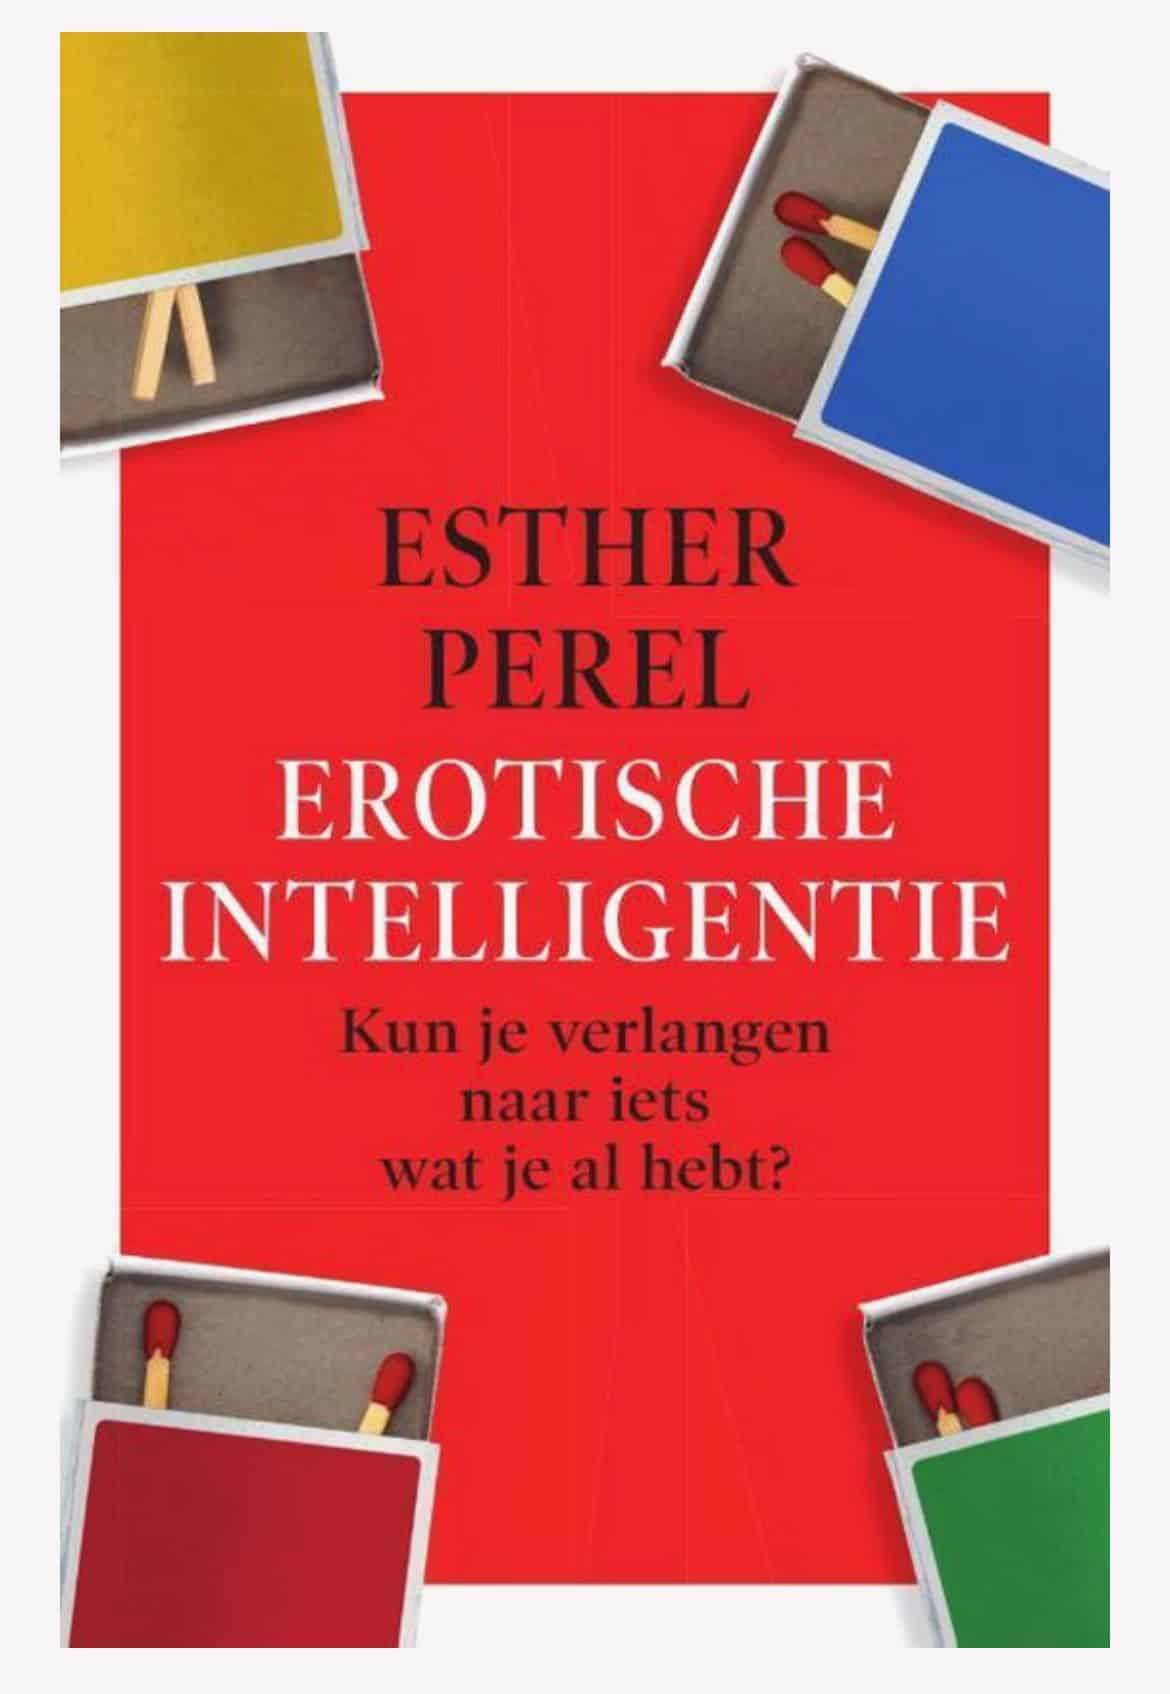 Boek Esther Perel Erotische Intelligentie